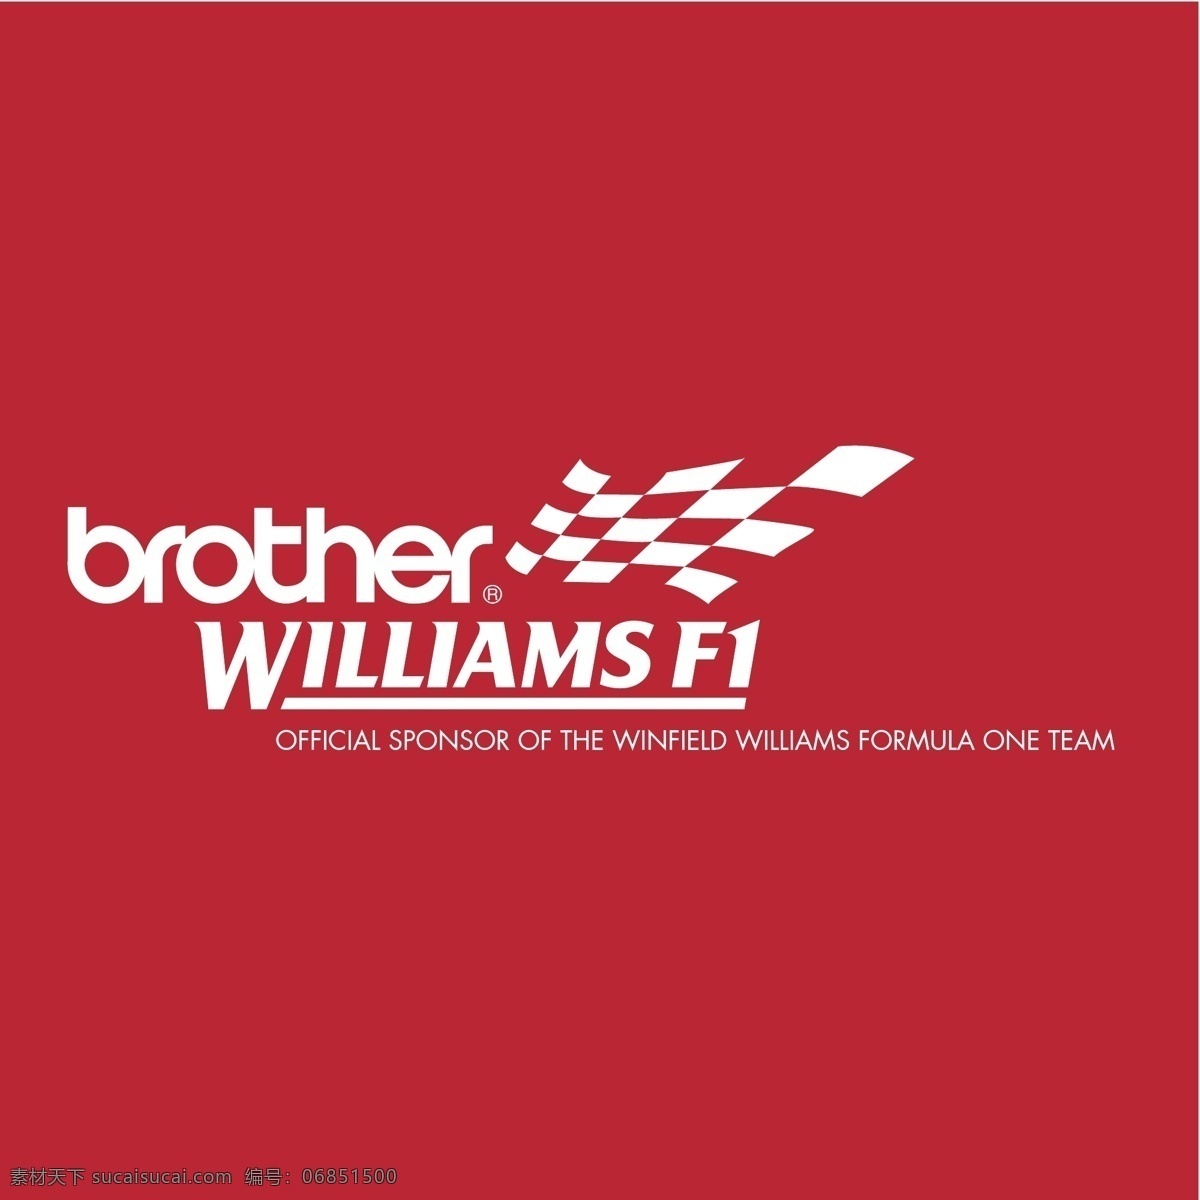 哥哥 威廉姆斯 f1 免费 标识 弟弟 psd源文件 logo设计